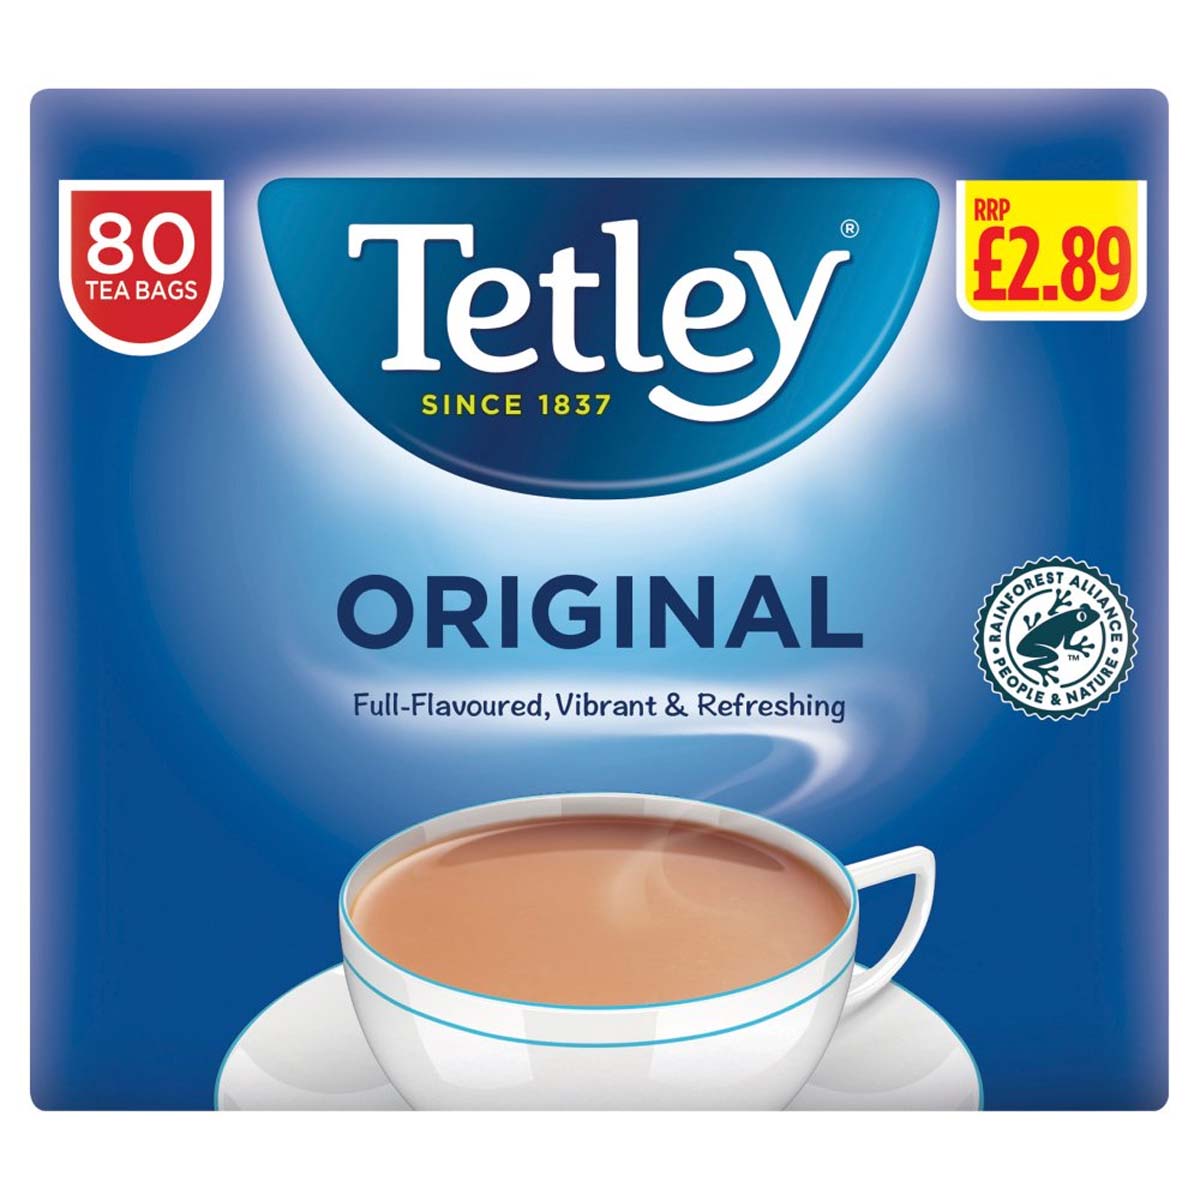 Tetley - Original 80 Tea Bags - 250g - Continental Food Store